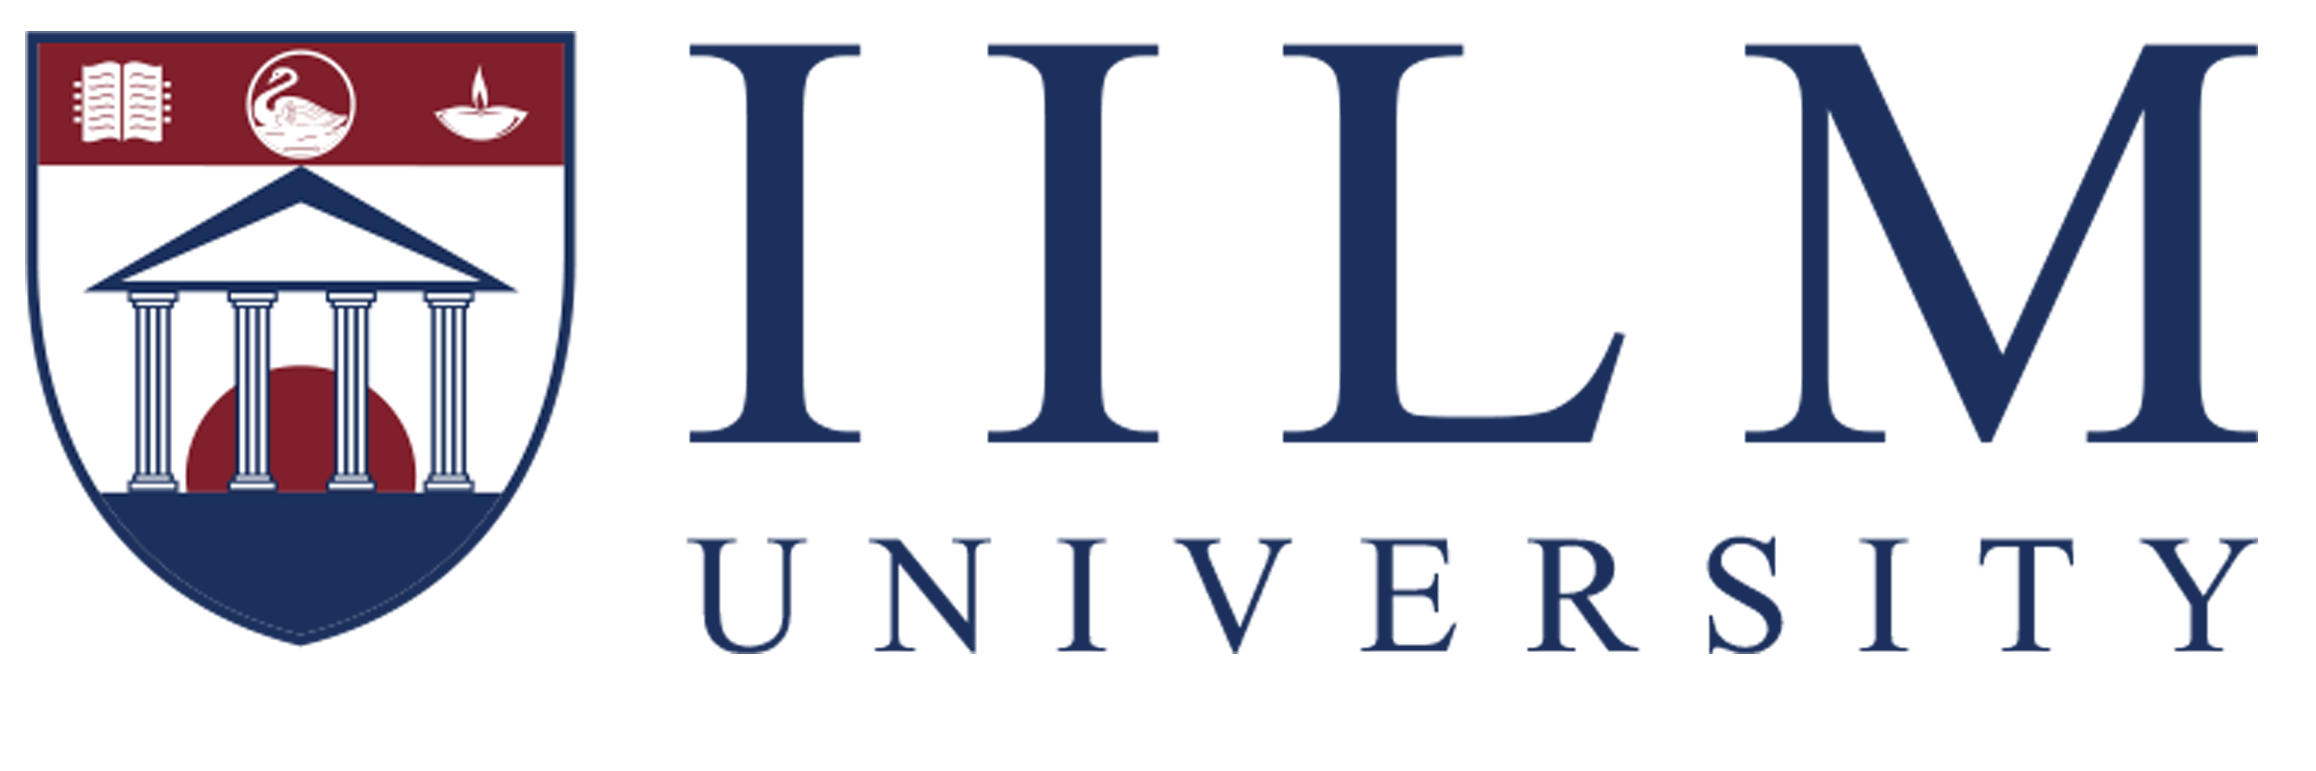 iilm university logo